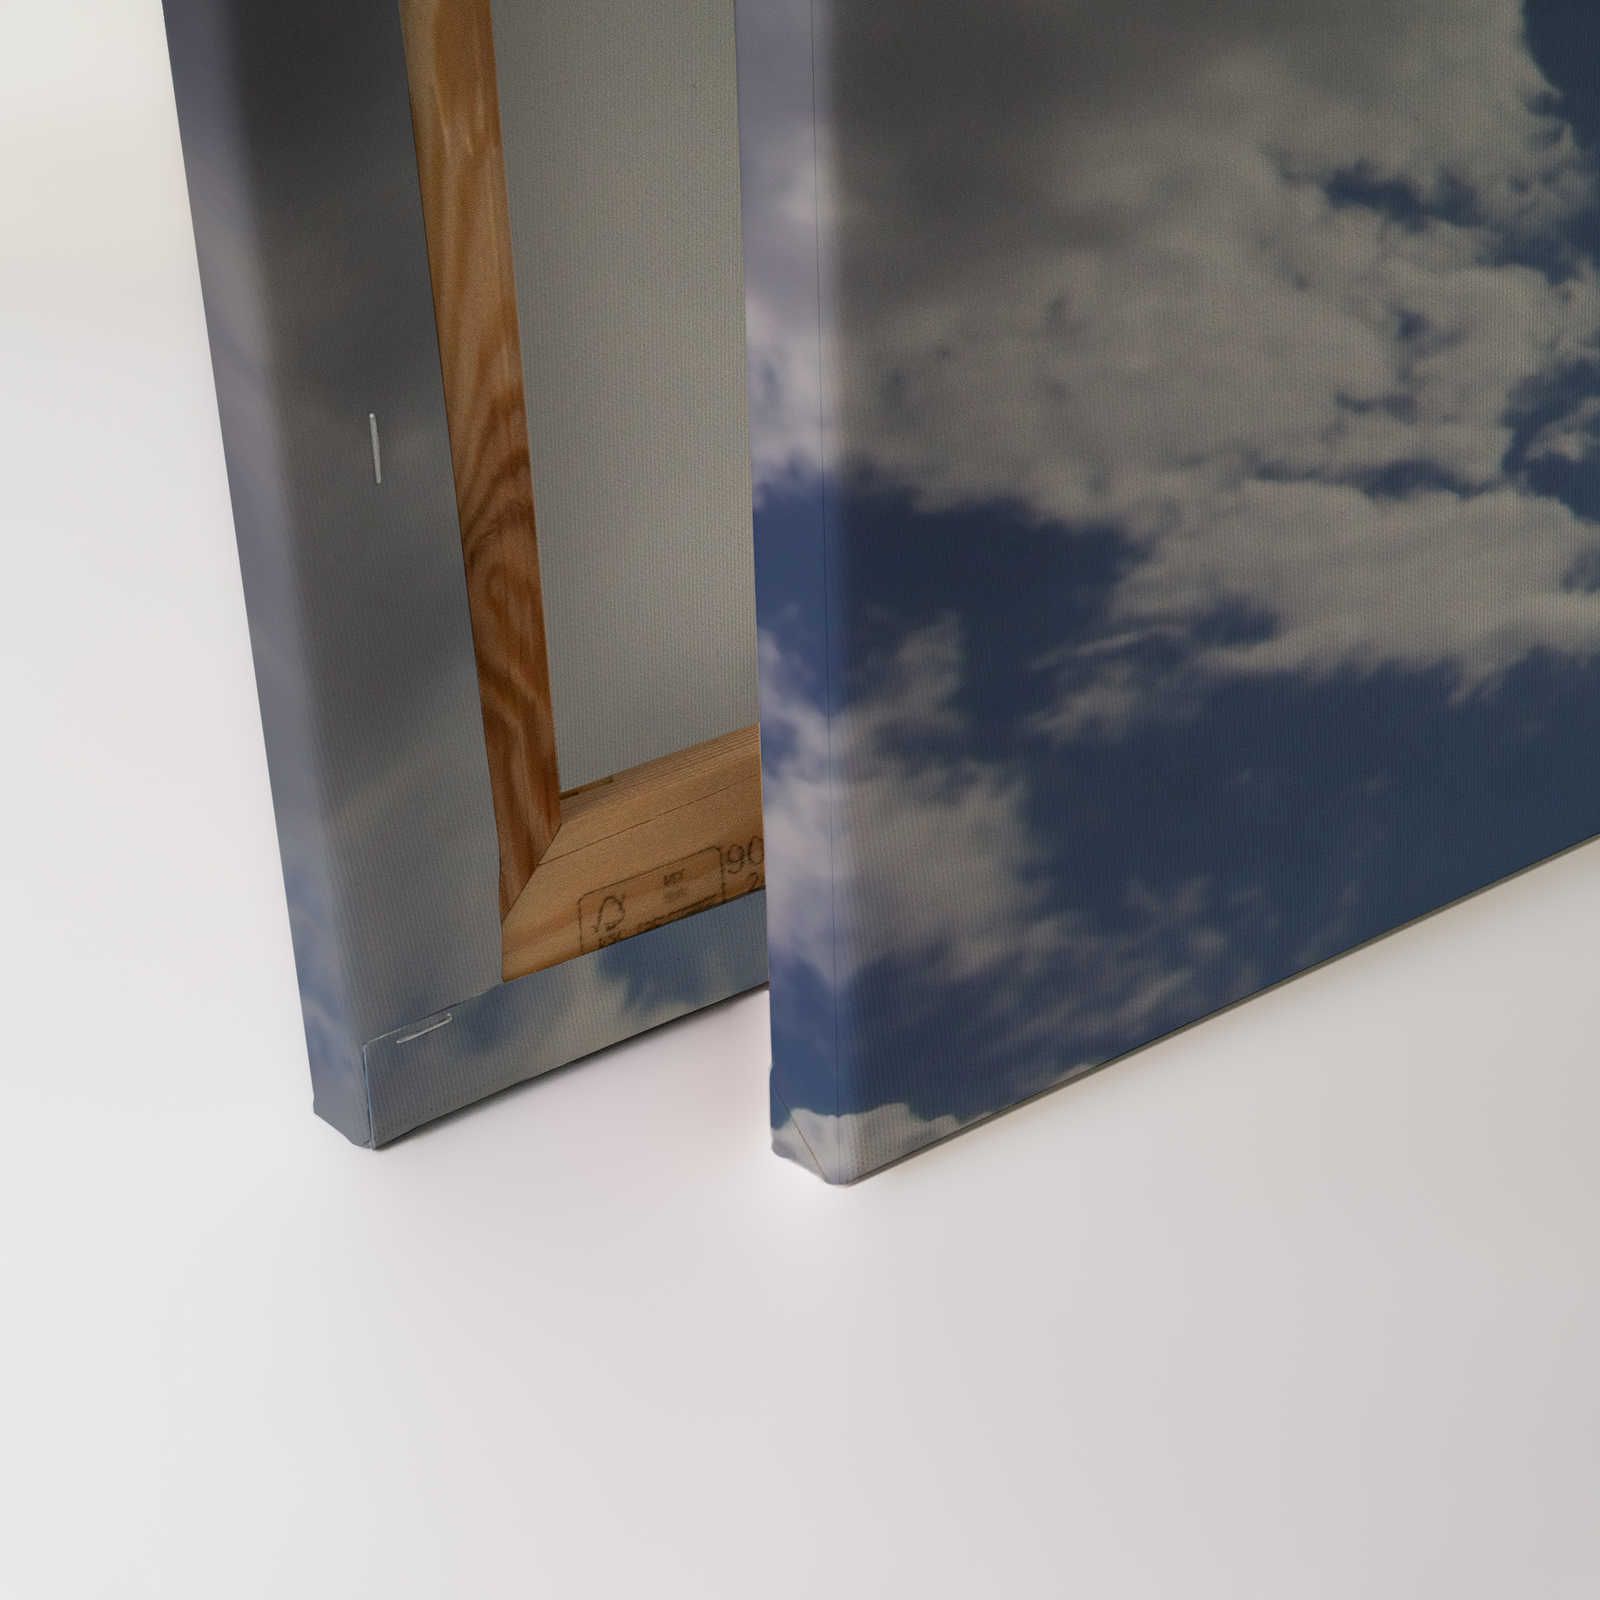             Hemelsblauw - Canvas schilderij Zonneschijn & blauwe wolkenlucht - 1,20 m x 0,80 m
        